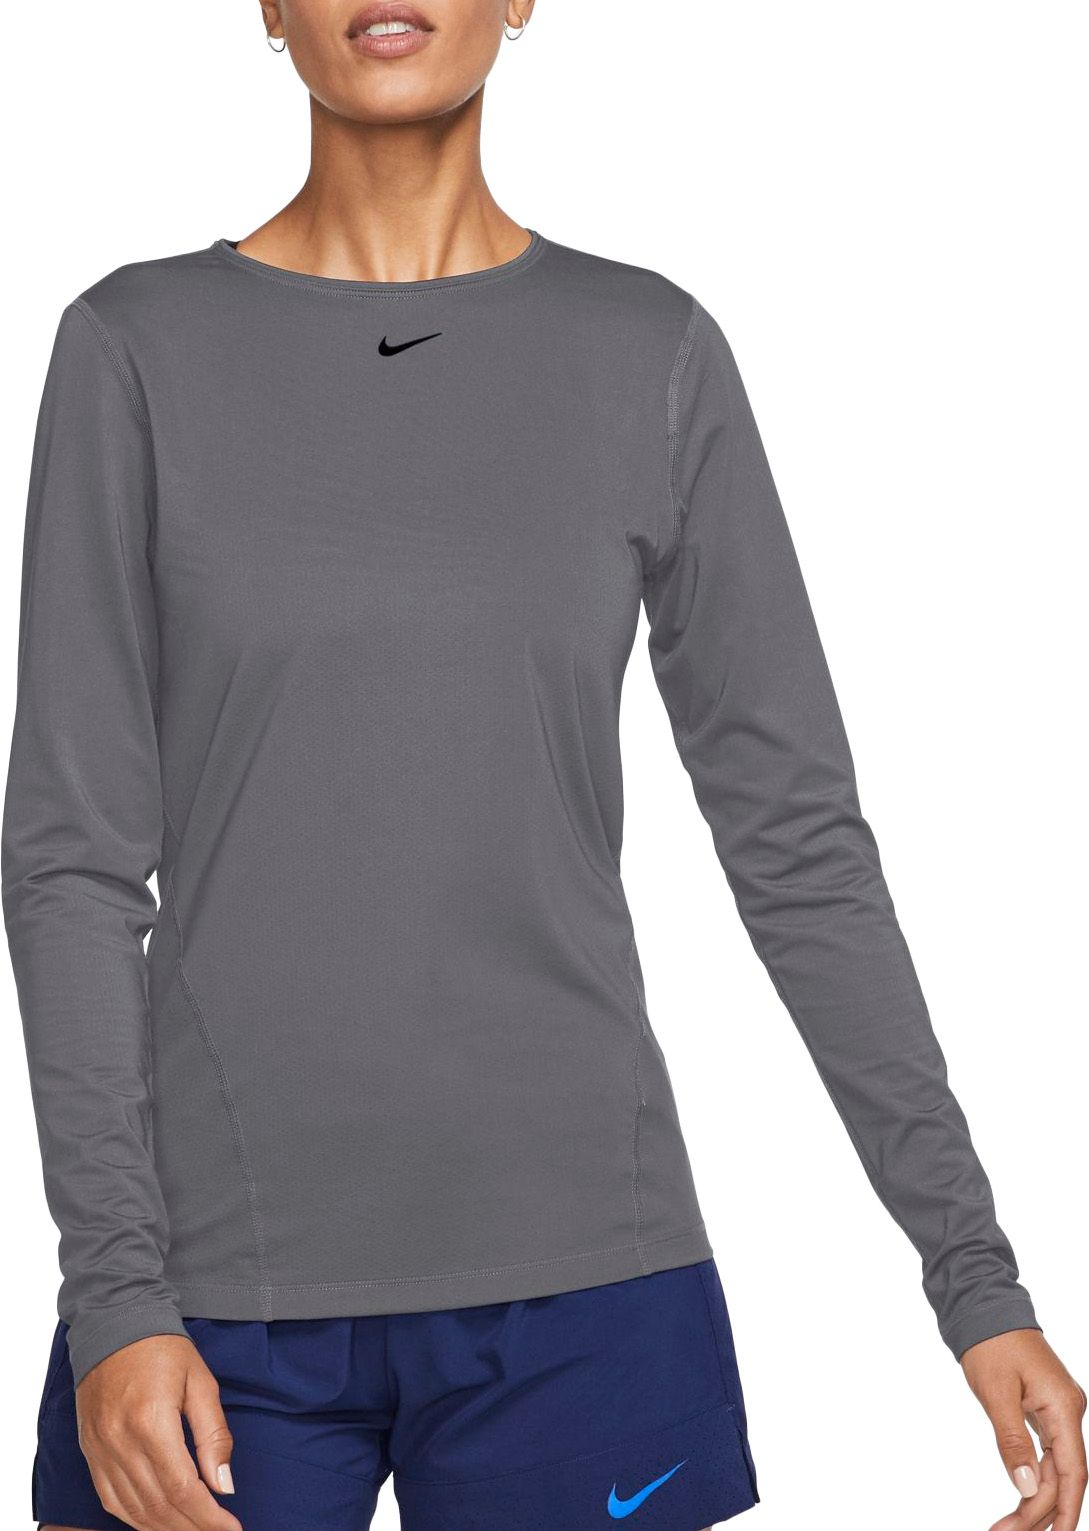 Nike Women's Pro Mesh Long Sleeve Shirt 